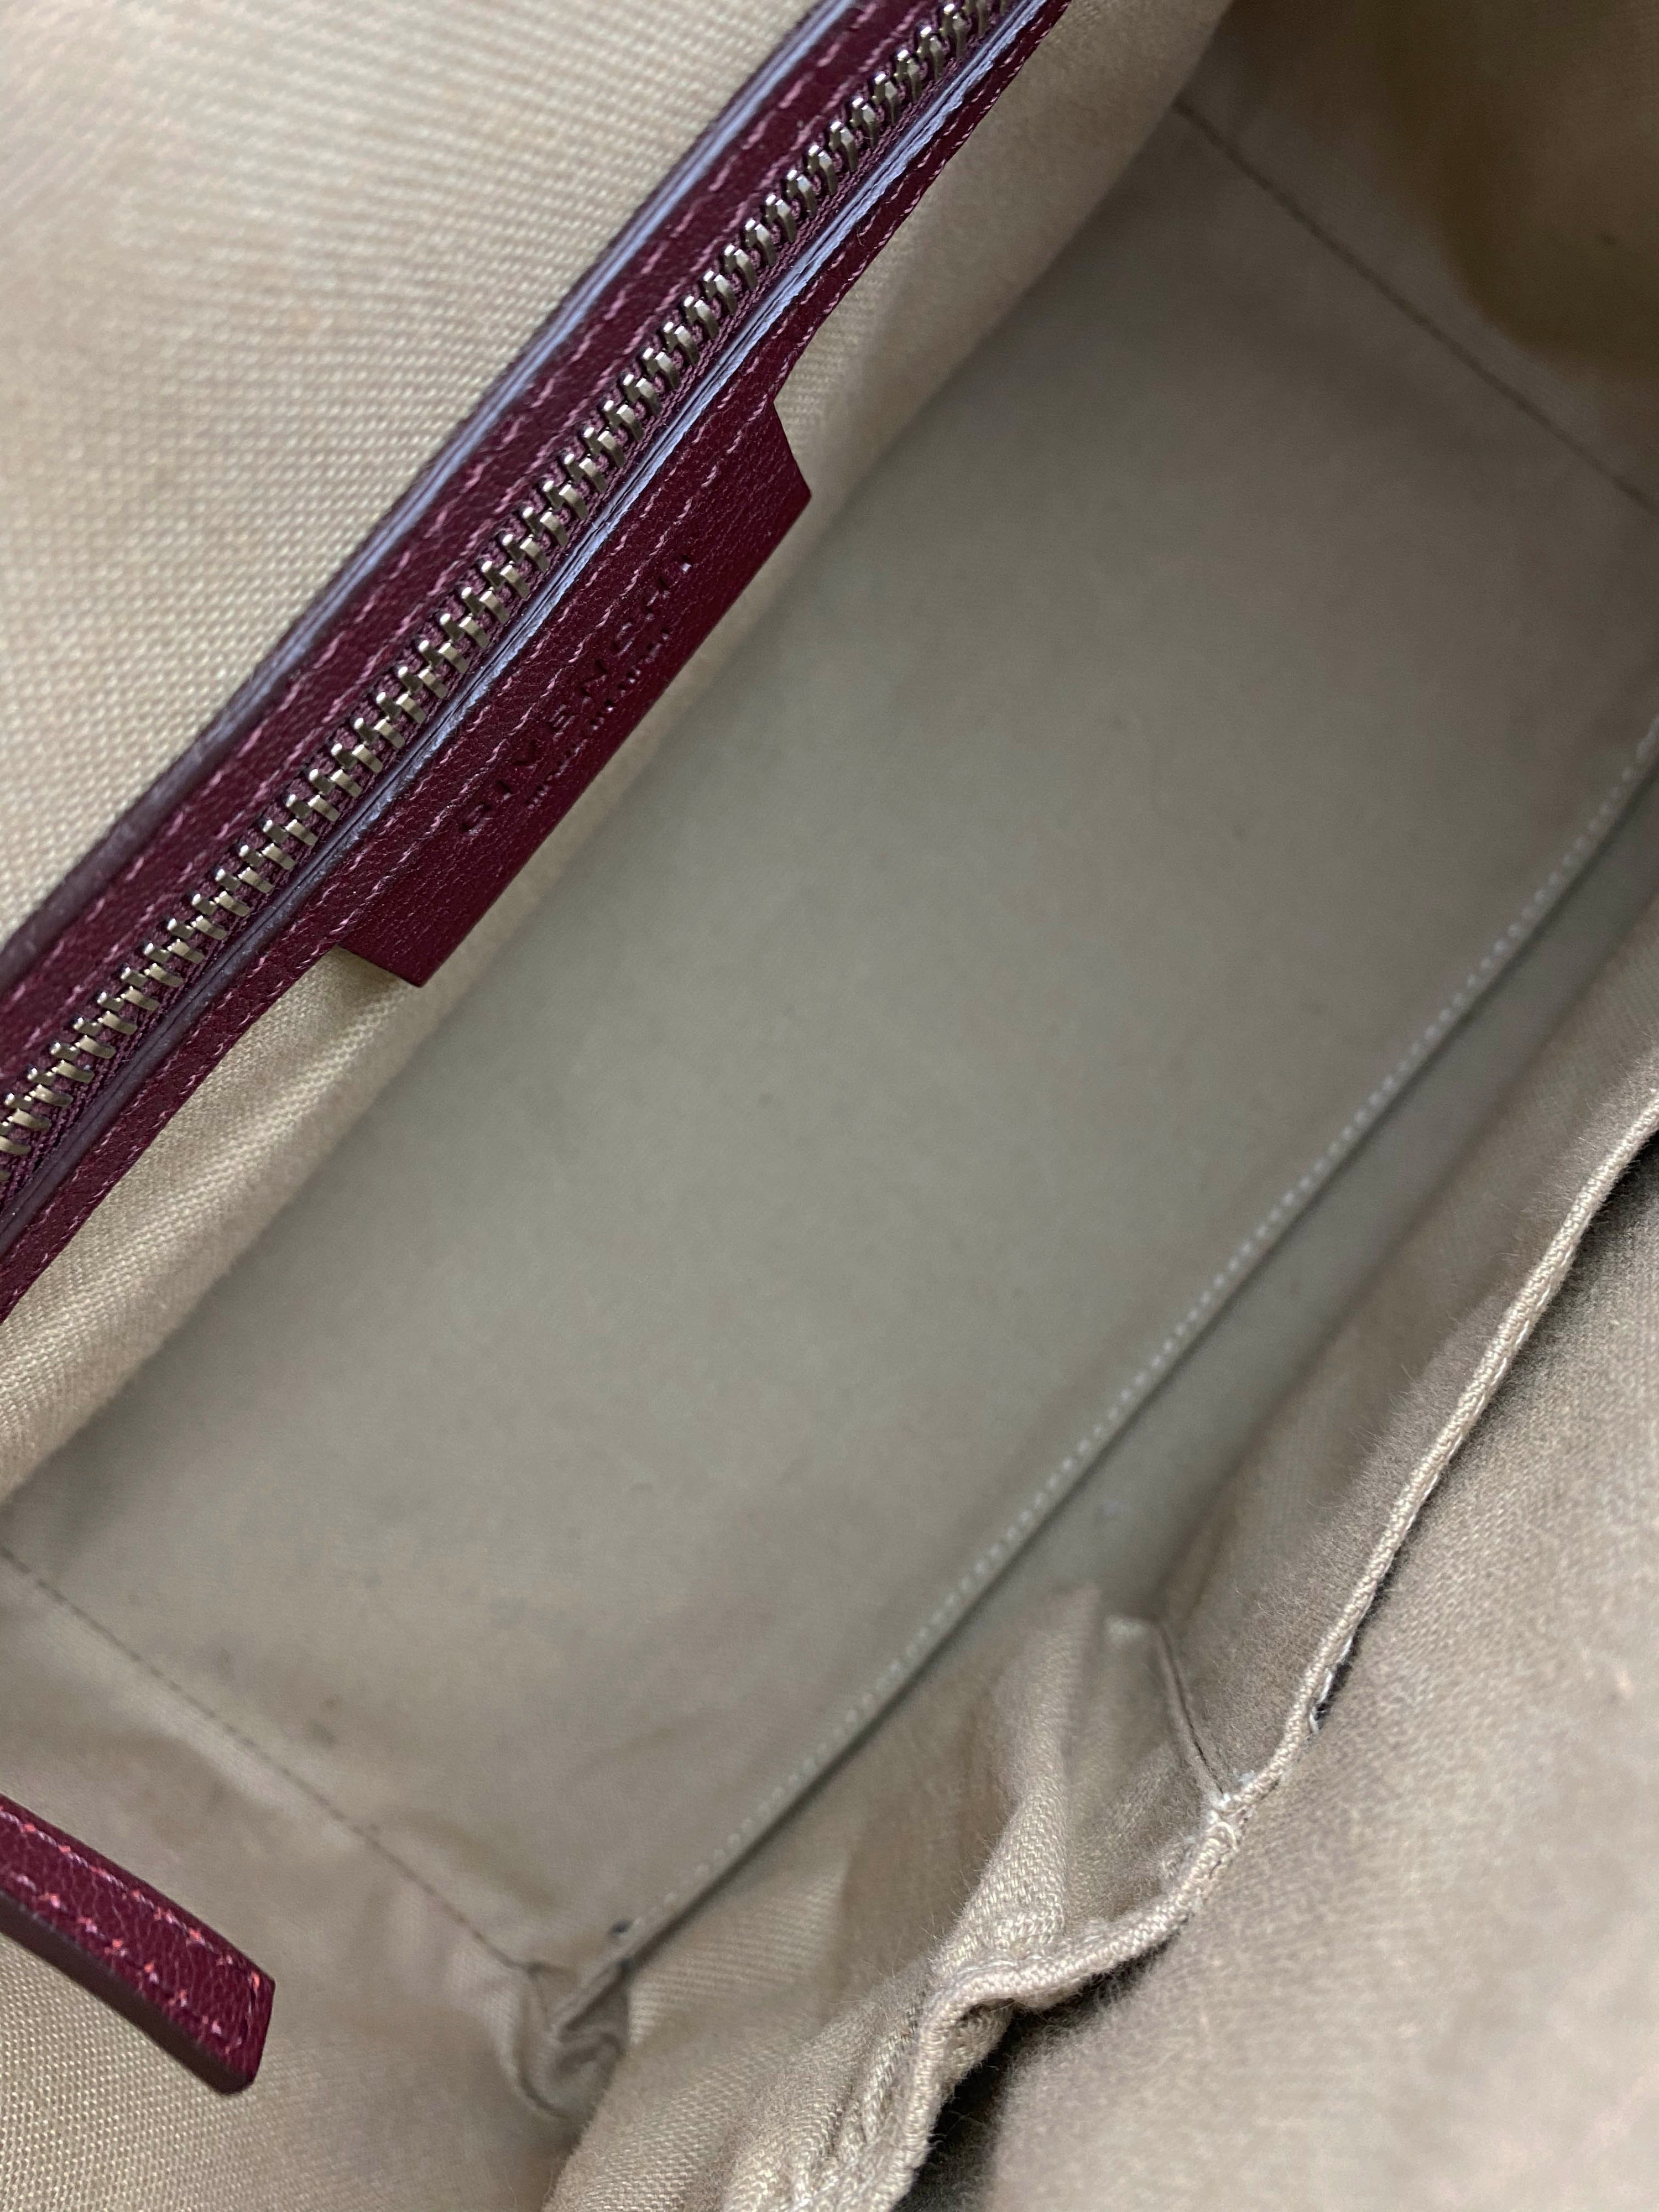 Givenchy Aubergine Small Antigona Bag